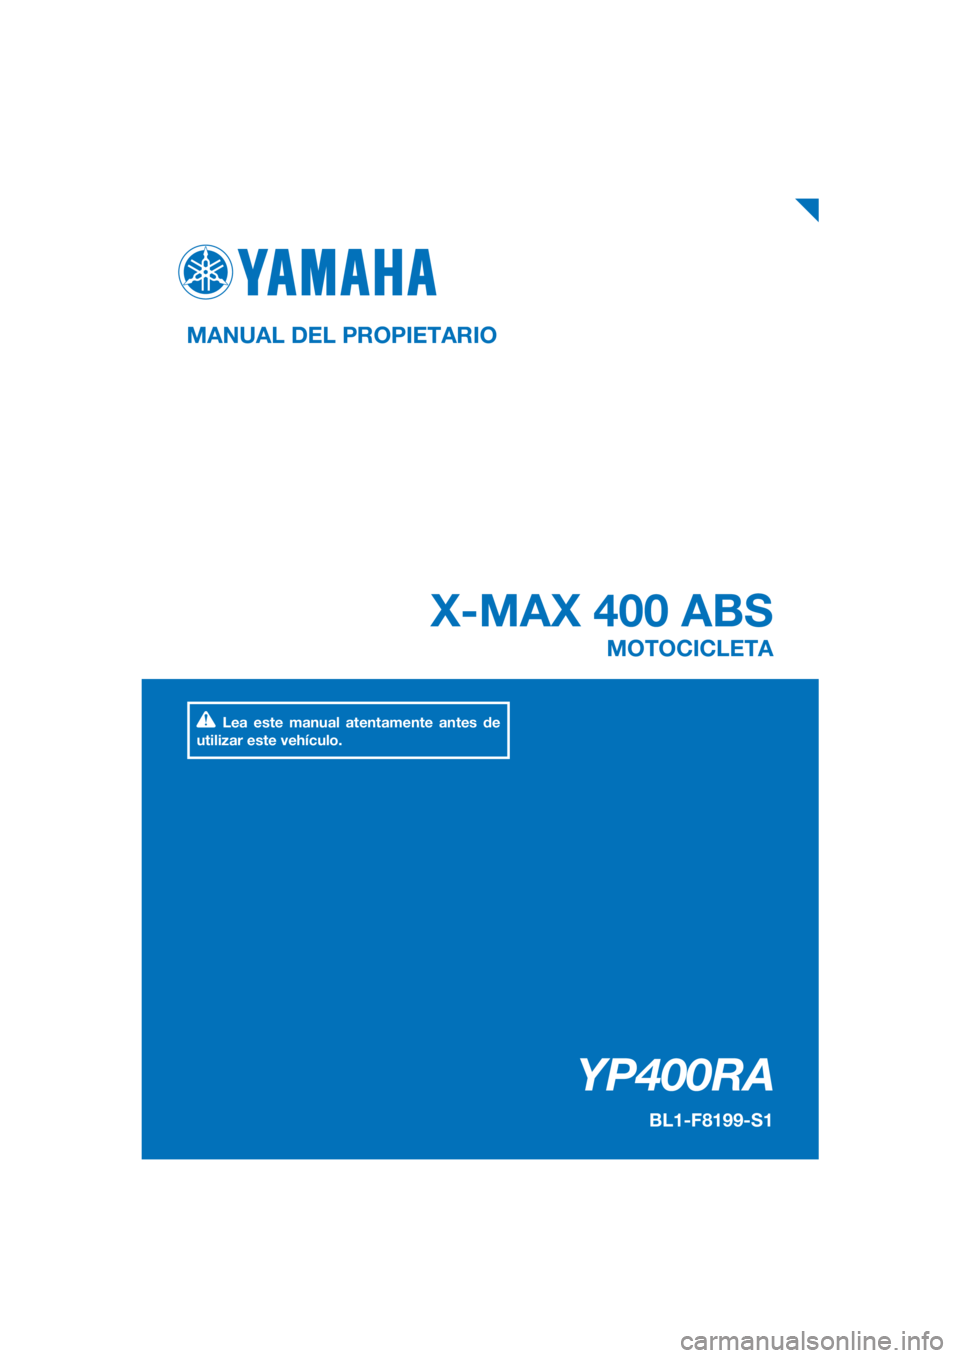 YAMAHA XMAX 400 2018  Manuale de Empleo (in Spanish) PANTONE285C
YP400RA
X-MAX 400 ABS
MANUAL DEL PROPIETARIO
BL1-F8199-S1
MOTOCICLETA
Lea este manual atentamente antes de 
utilizar este vehículo.
[Spanish  (S)] 